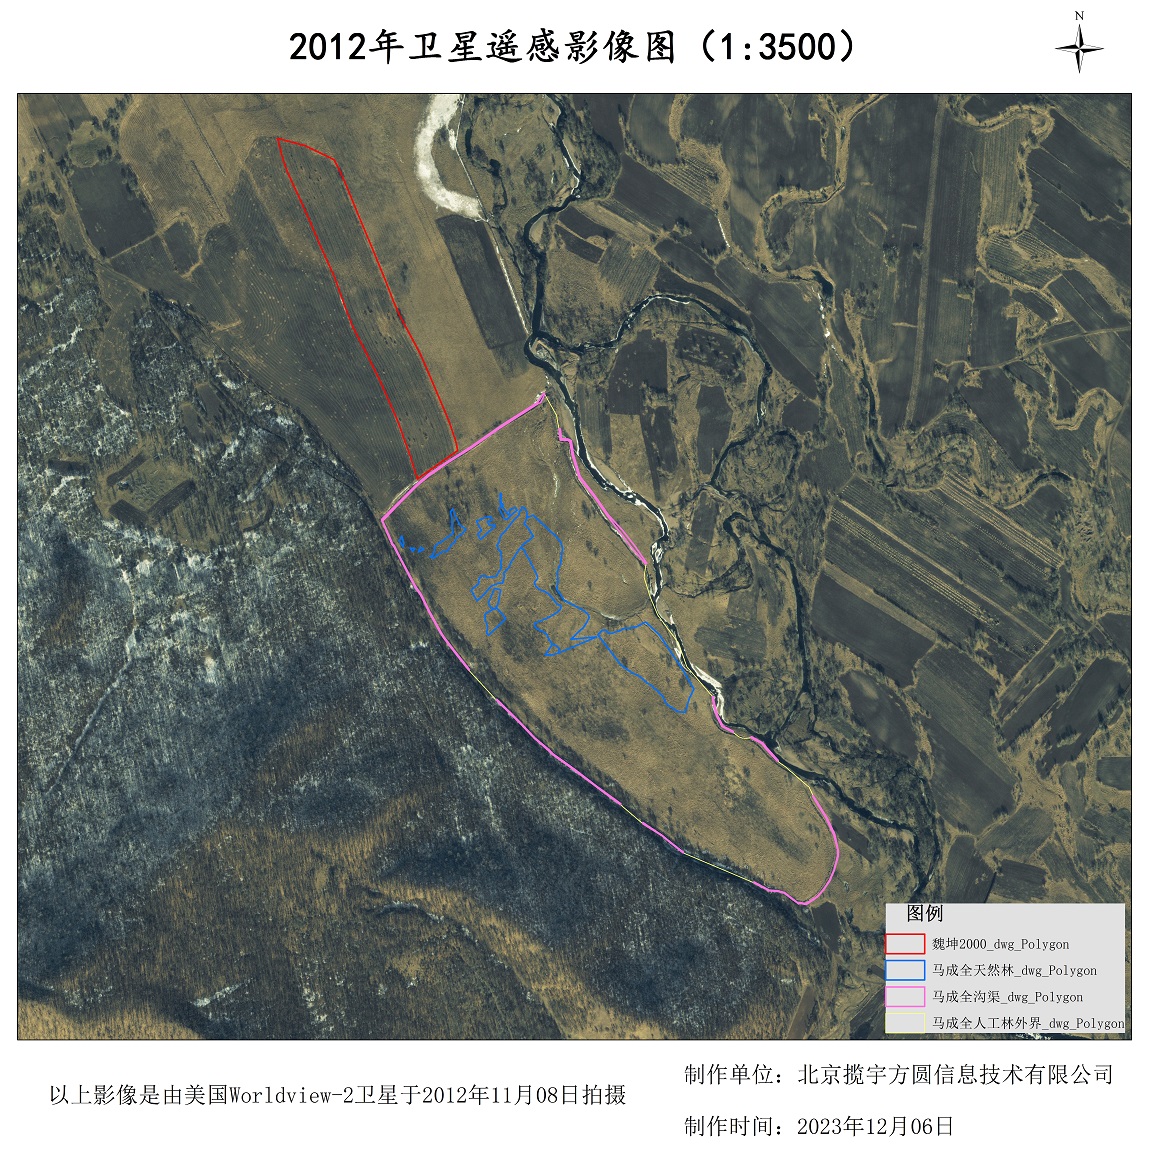 0.5米分辨率卫星影像作用于林场查询样例图